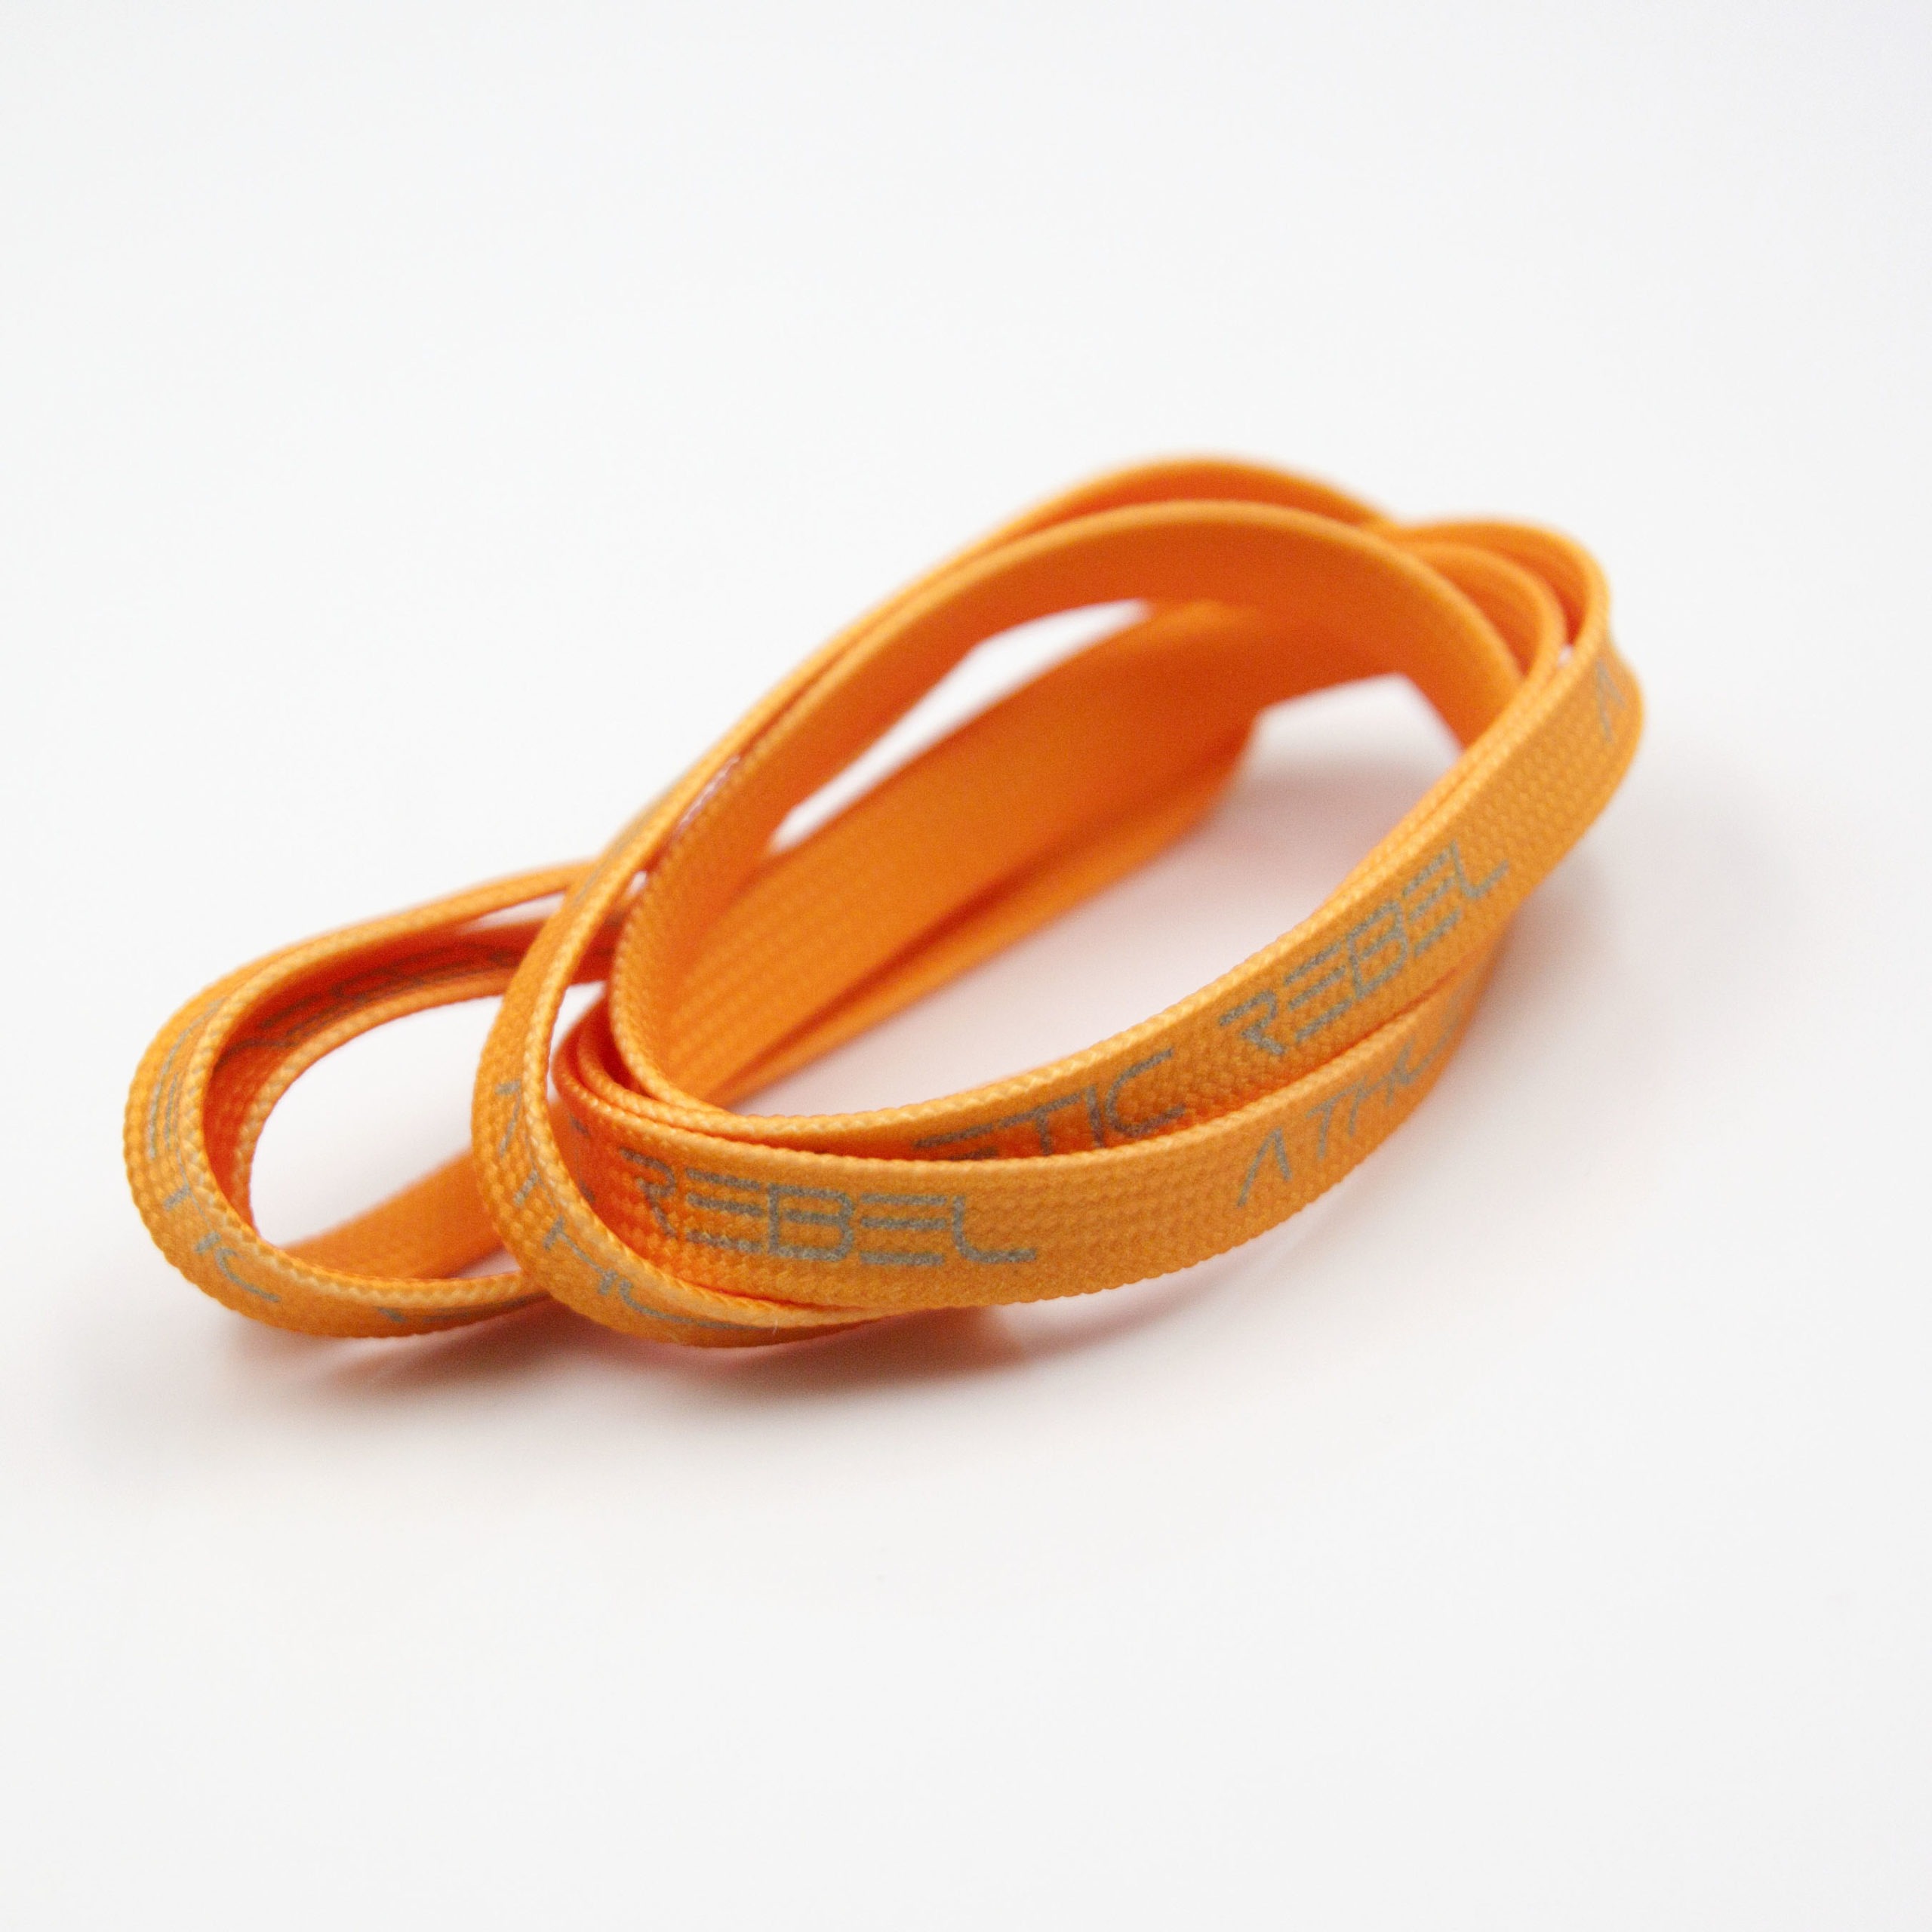 Tasiemka pleciona tunelowa drukowana, w kolorze pomarańczowym z szarym wzorem, do odzieży.